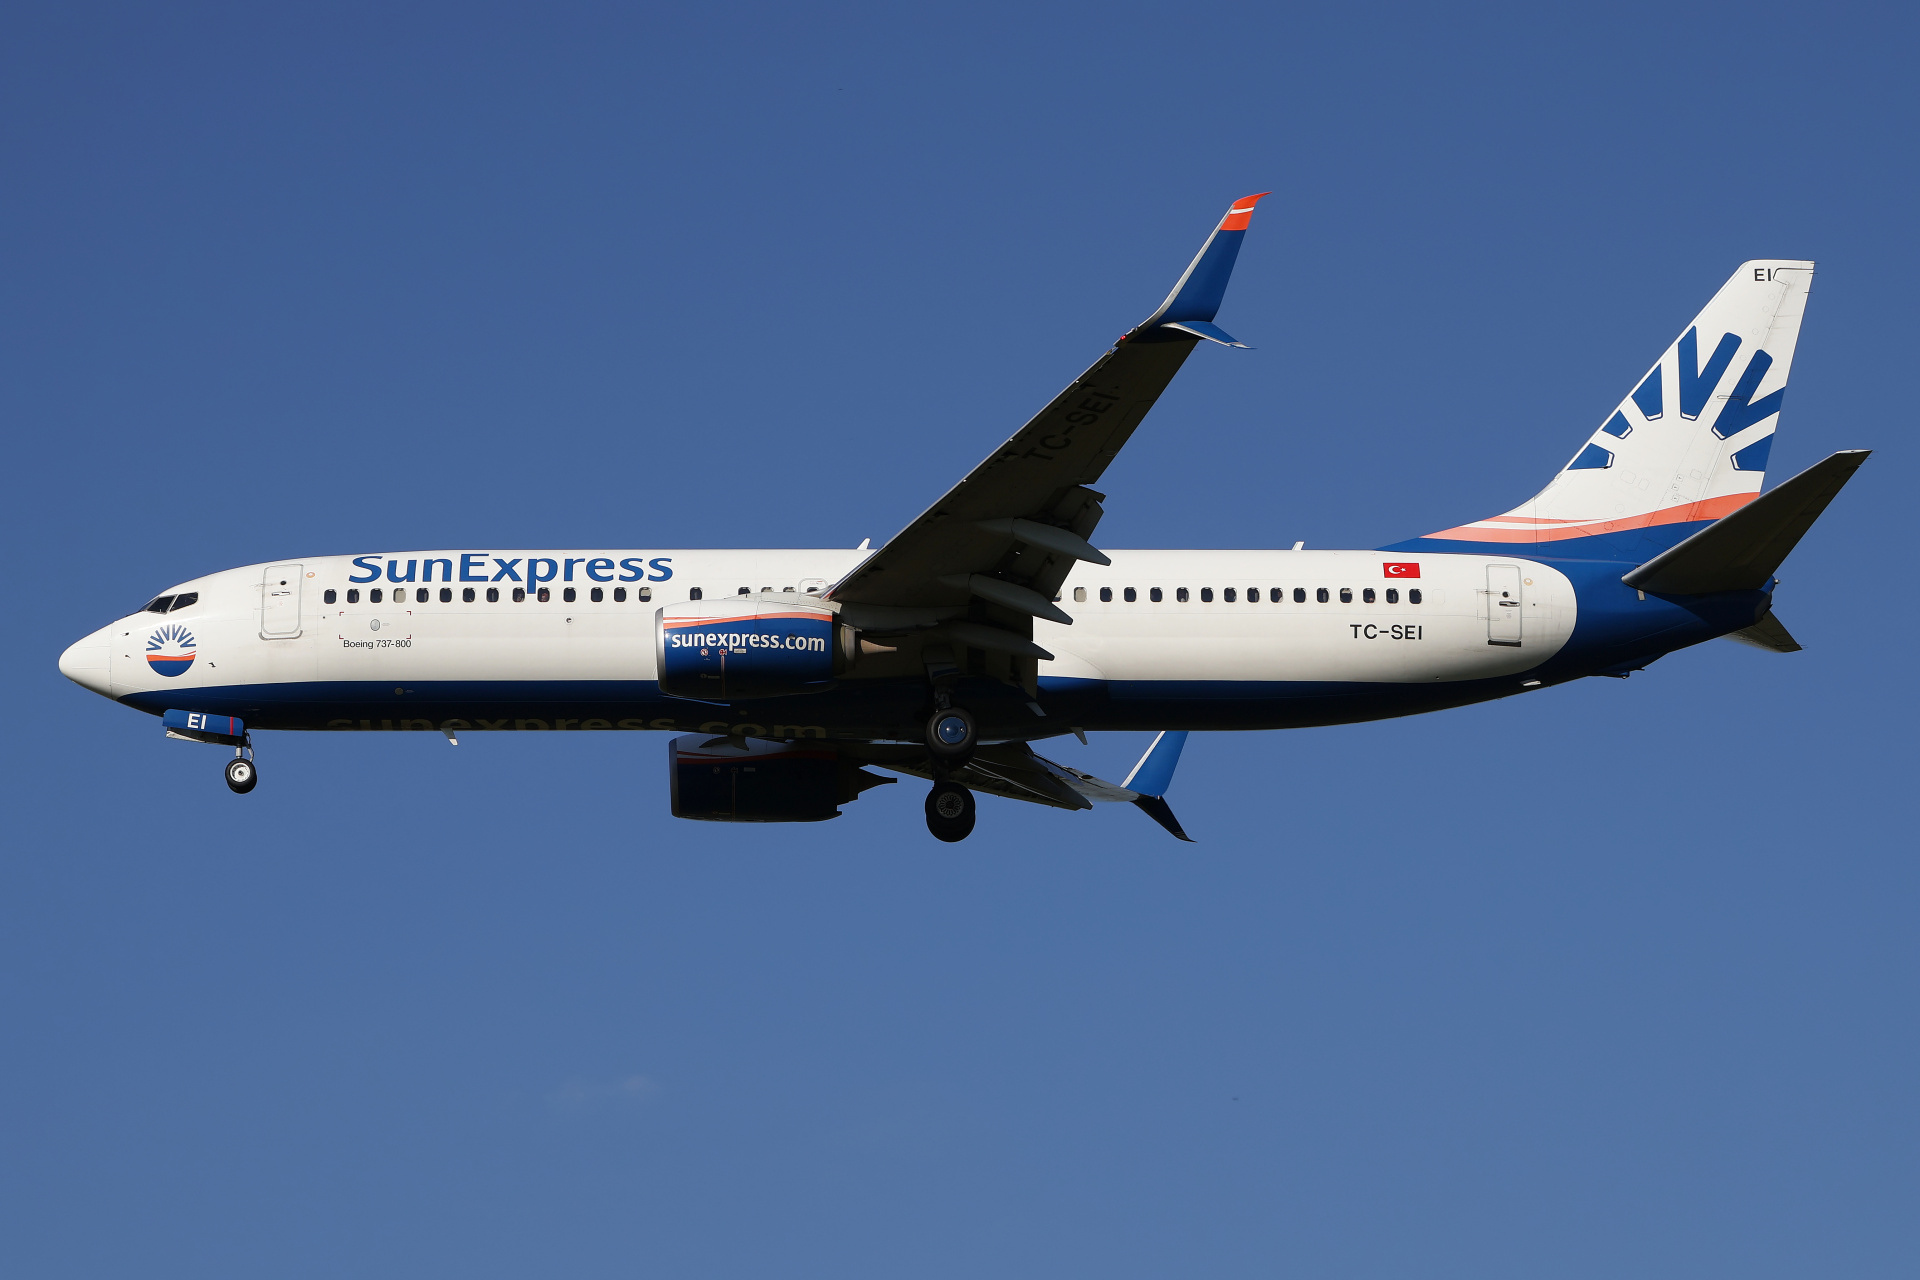 TC-SEI (Aircraft » EPWA Spotting » Boeing 737-800 » SunExpress)